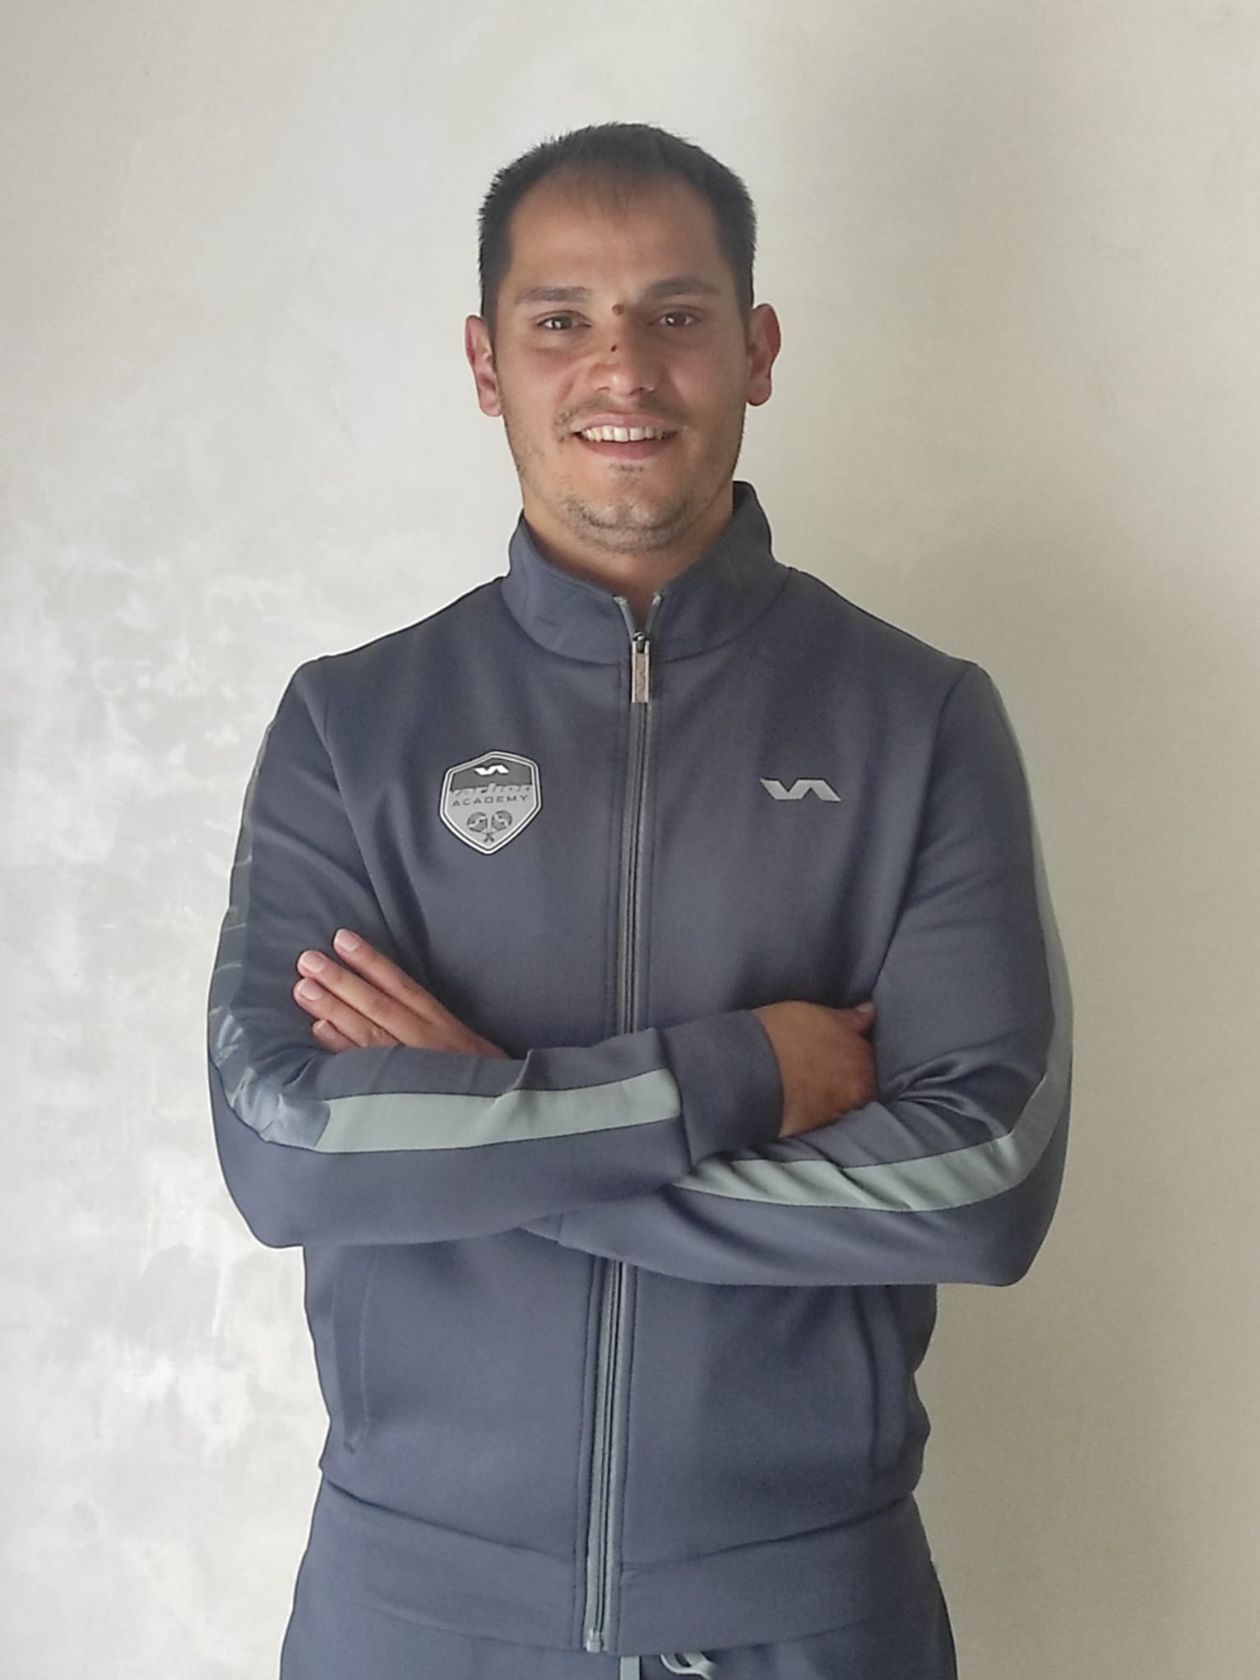 Roberto Martín Ochando, preparador físico de jugadores profesionales de pádel y parte del equipo de Varlion Academy